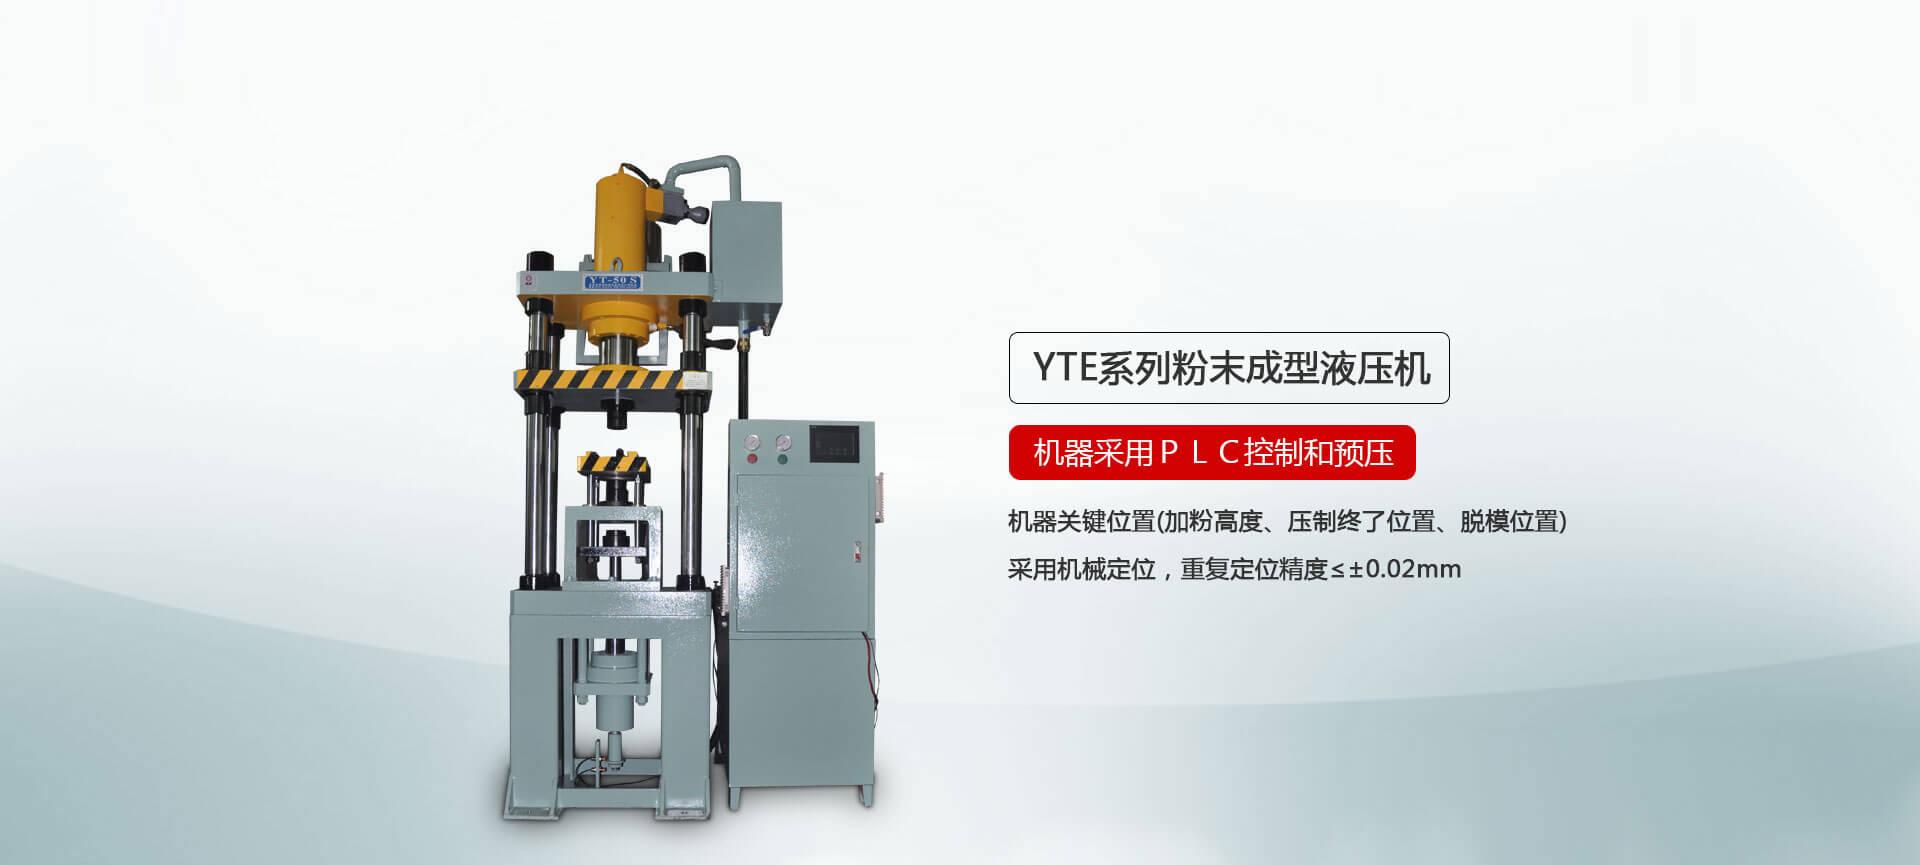 YTM系列粉末成型液壓機